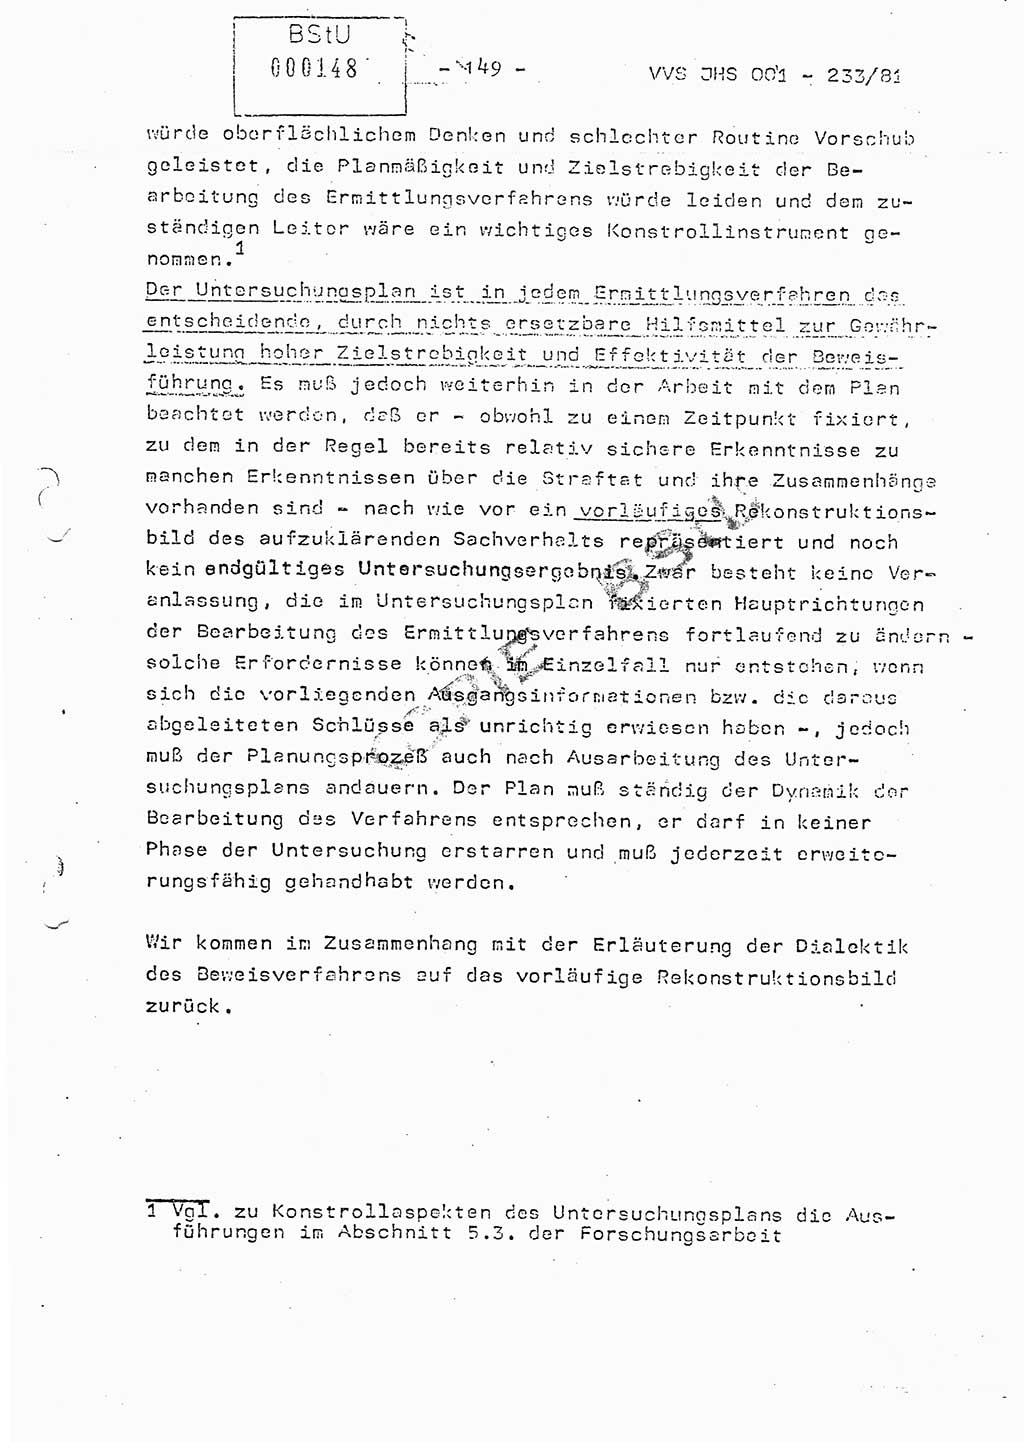 Dissertation Oberstleutnant Horst Zank (JHS), Oberstleutnant Dr. Karl-Heinz Knoblauch (JHS), Oberstleutnant Gustav-Adolf Kowalewski (HA Ⅸ), Oberstleutnant Wolfgang Plötner (HA Ⅸ), Ministerium für Staatssicherheit (MfS) [Deutsche Demokratische Republik (DDR)], Juristische Hochschule (JHS), Vertrauliche Verschlußsache (VVS) o001-233/81, Potsdam 1981, Blatt 149 (Diss. MfS DDR JHS VVS o001-233/81 1981, Bl. 149)